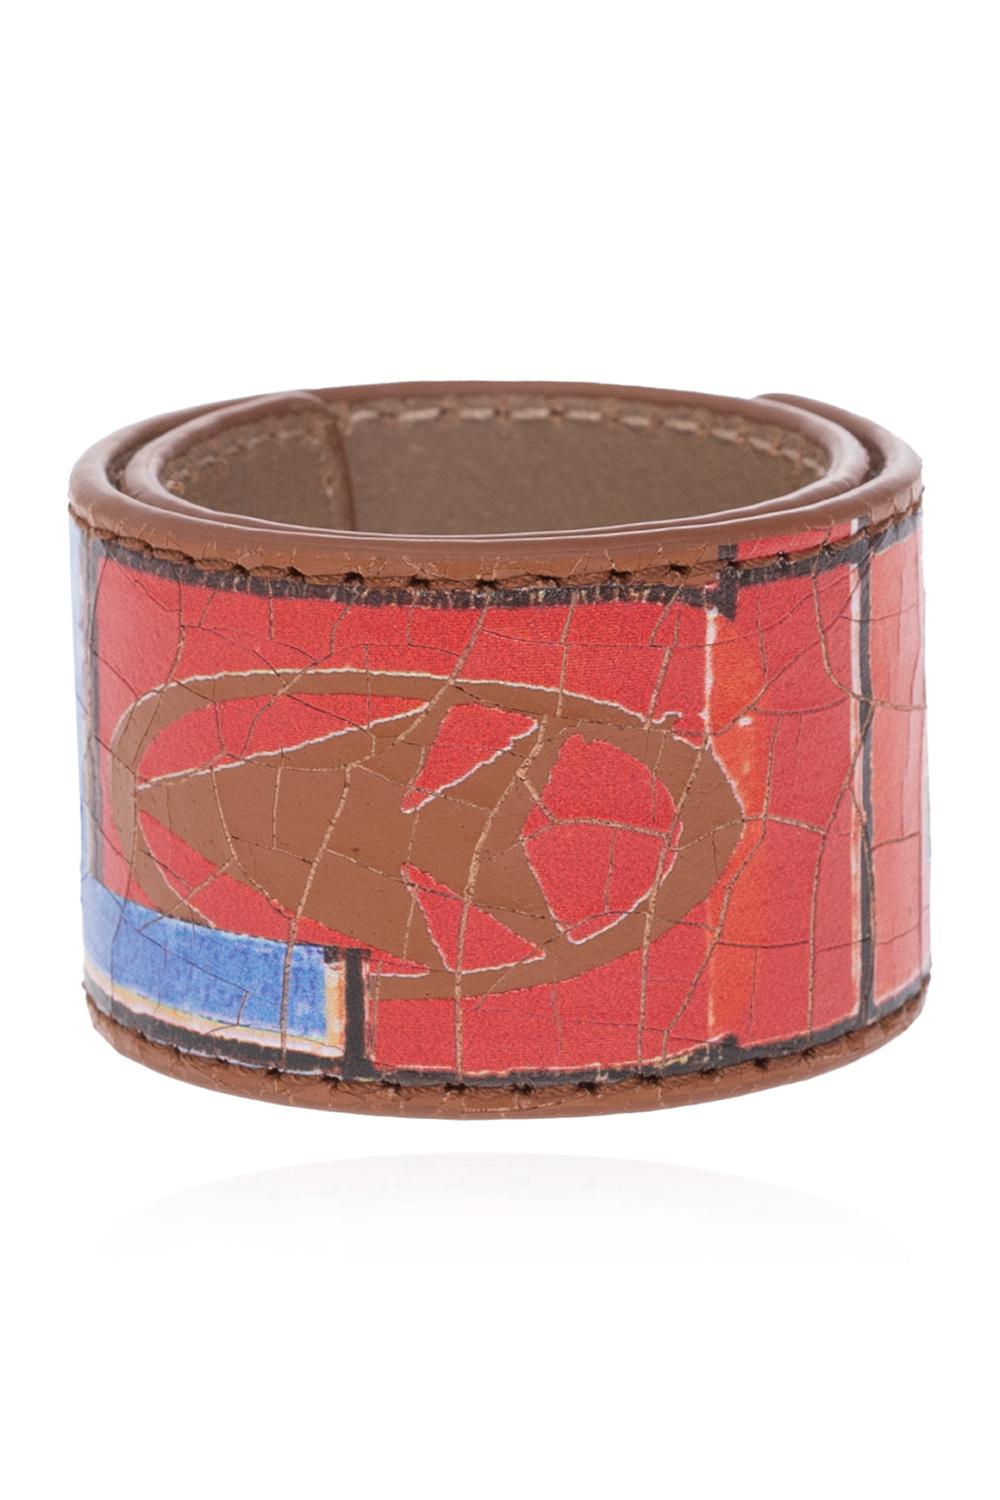 Diesel ‘A-Printye’ leather bracelet